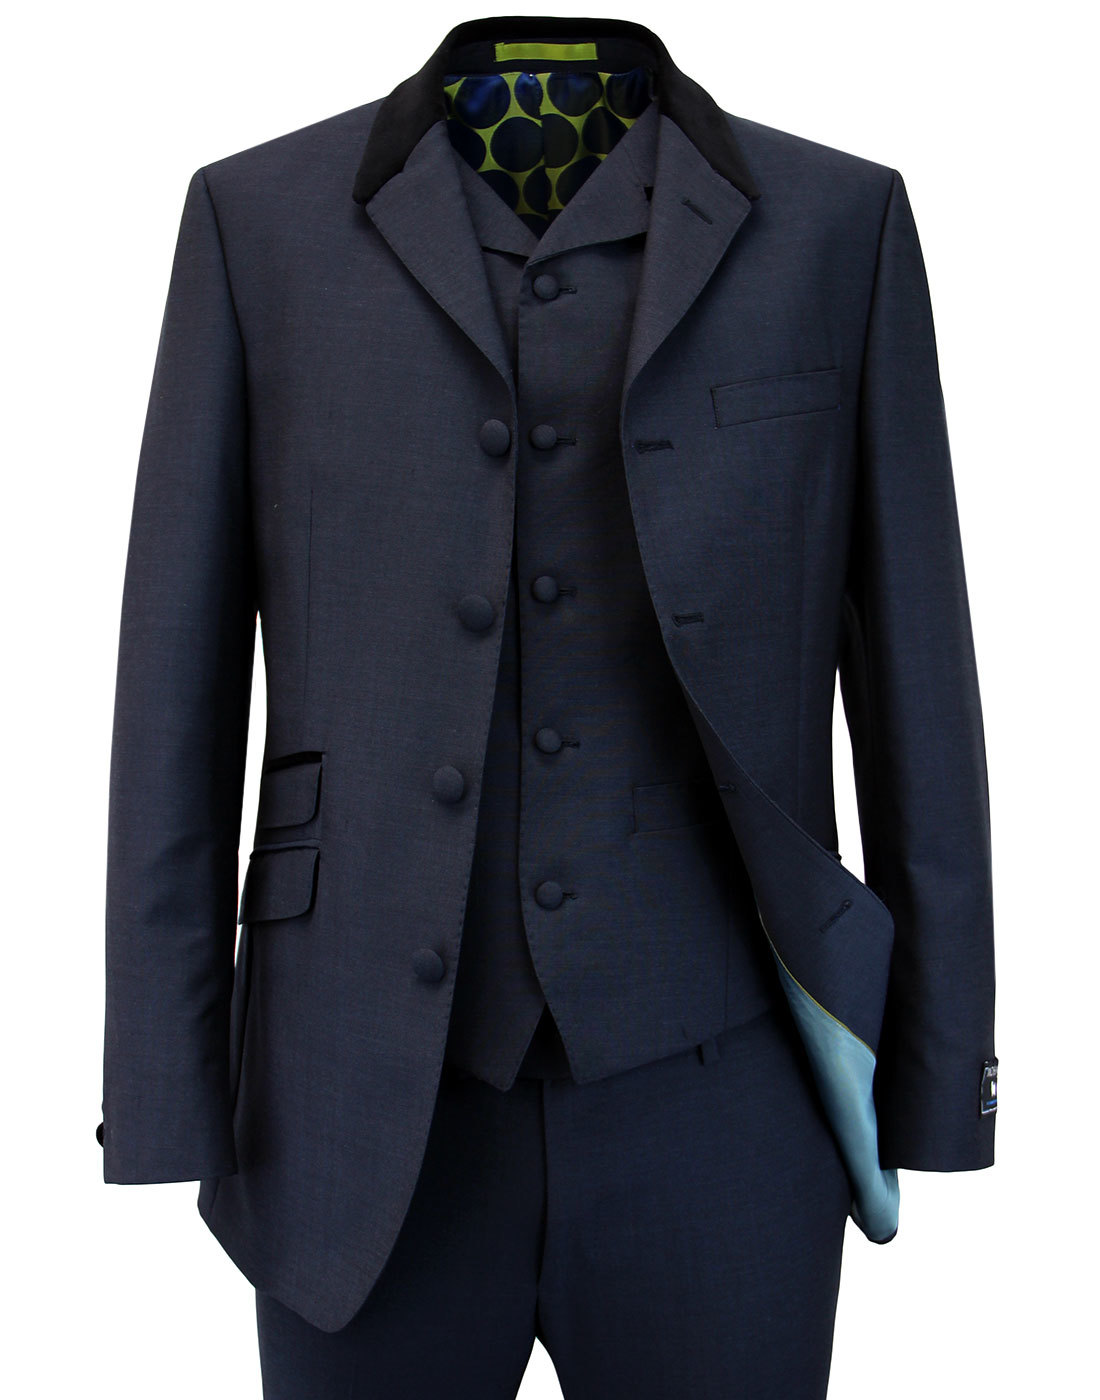 MADCAP ENGLAND Button Tonic Suit Jacket (SG) | art-kk.com